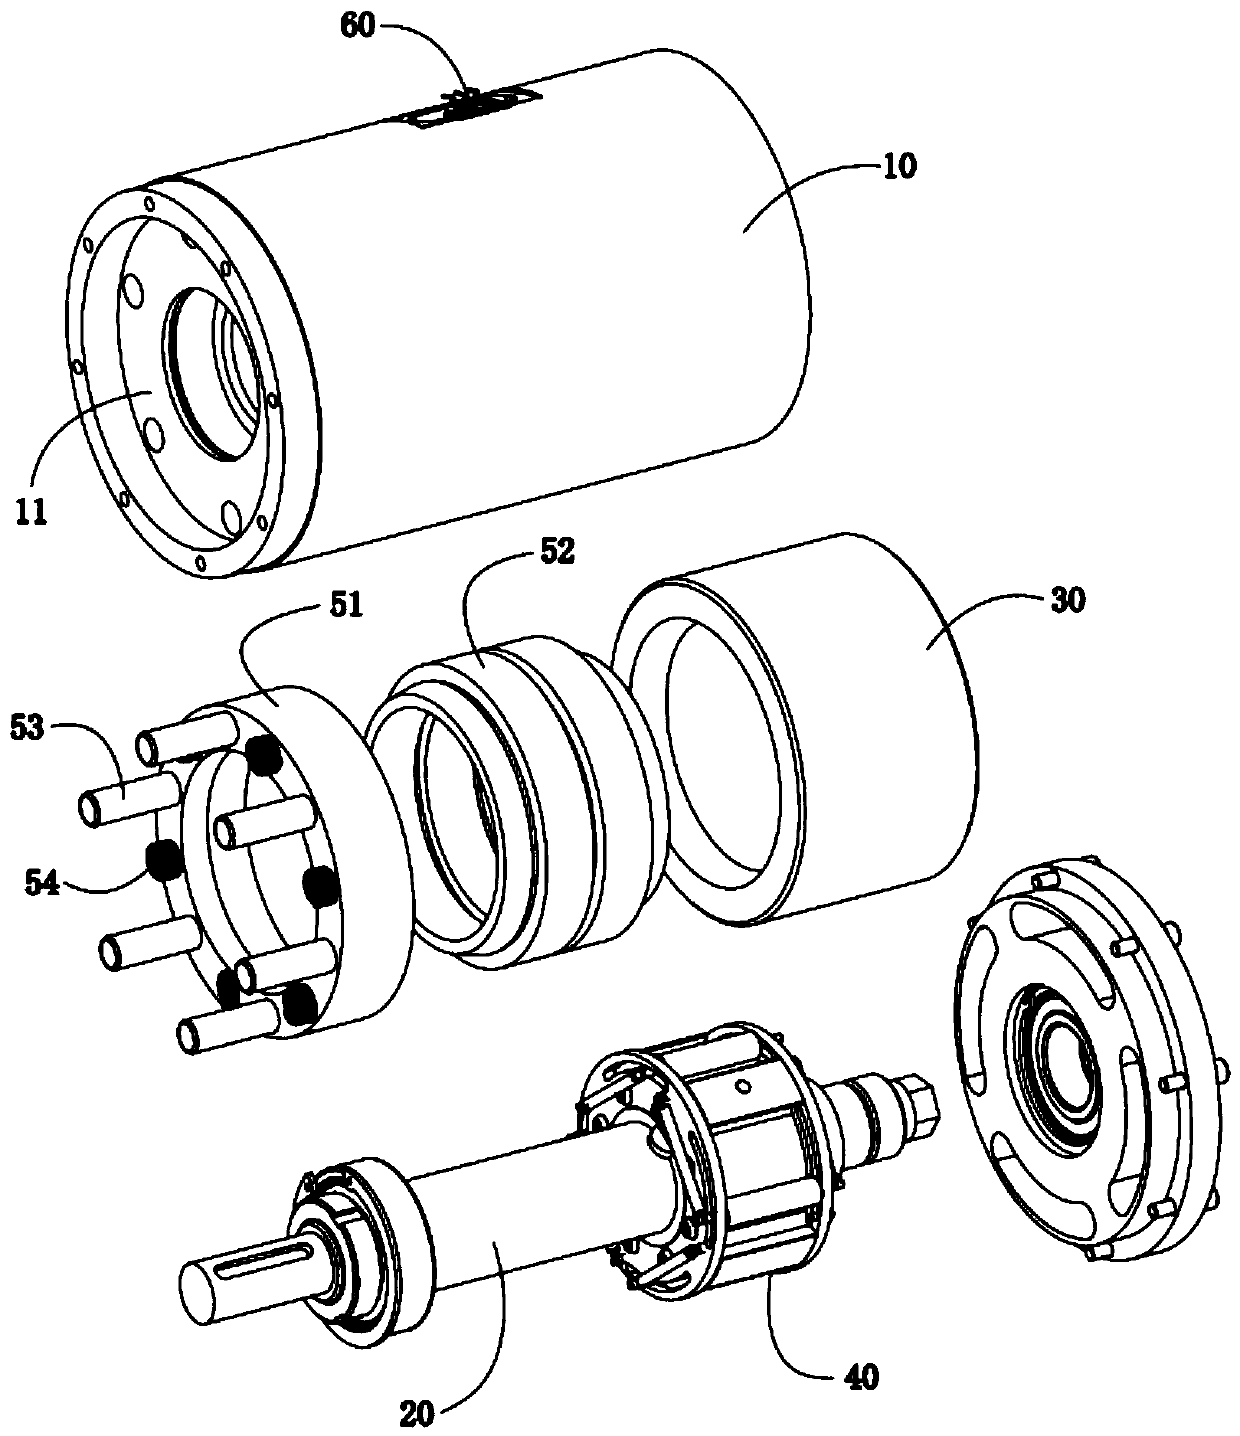 Progressive roller centrifugal brake